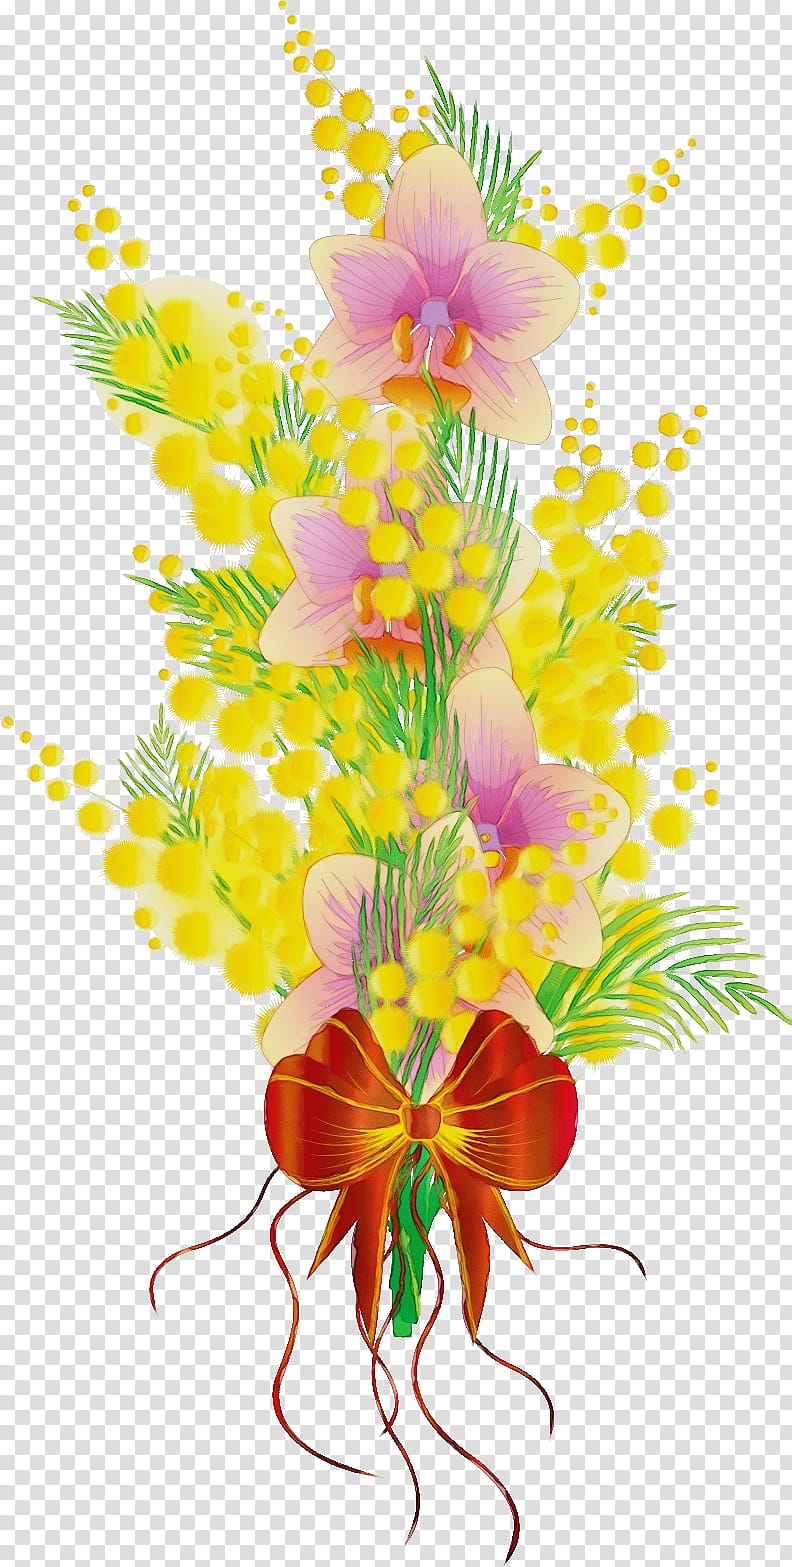 Floral design, Flower Bouquet, Flower Bunch, Watercolor, Paint, Wet Ink, Cut Flowers, Plant transparent background PNG clipart